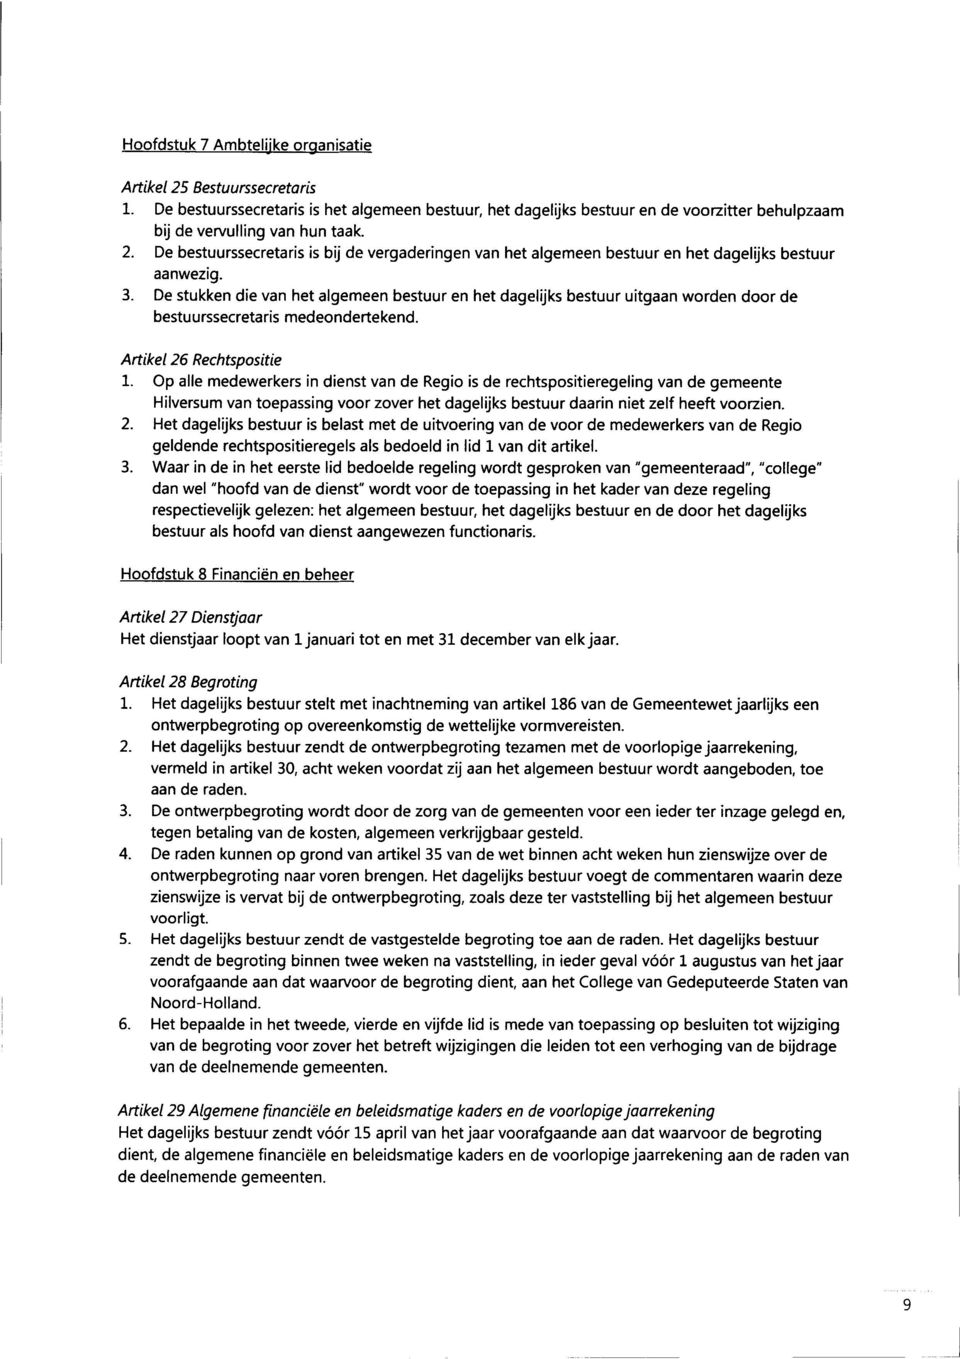 Op alle medewerkers in dienst van de Regio is de rechtspositieregeling van de gemeente Hilversum van toepassing voor zover het dagelijks bestuur daarin niet zelf heeft voorzien. 2.